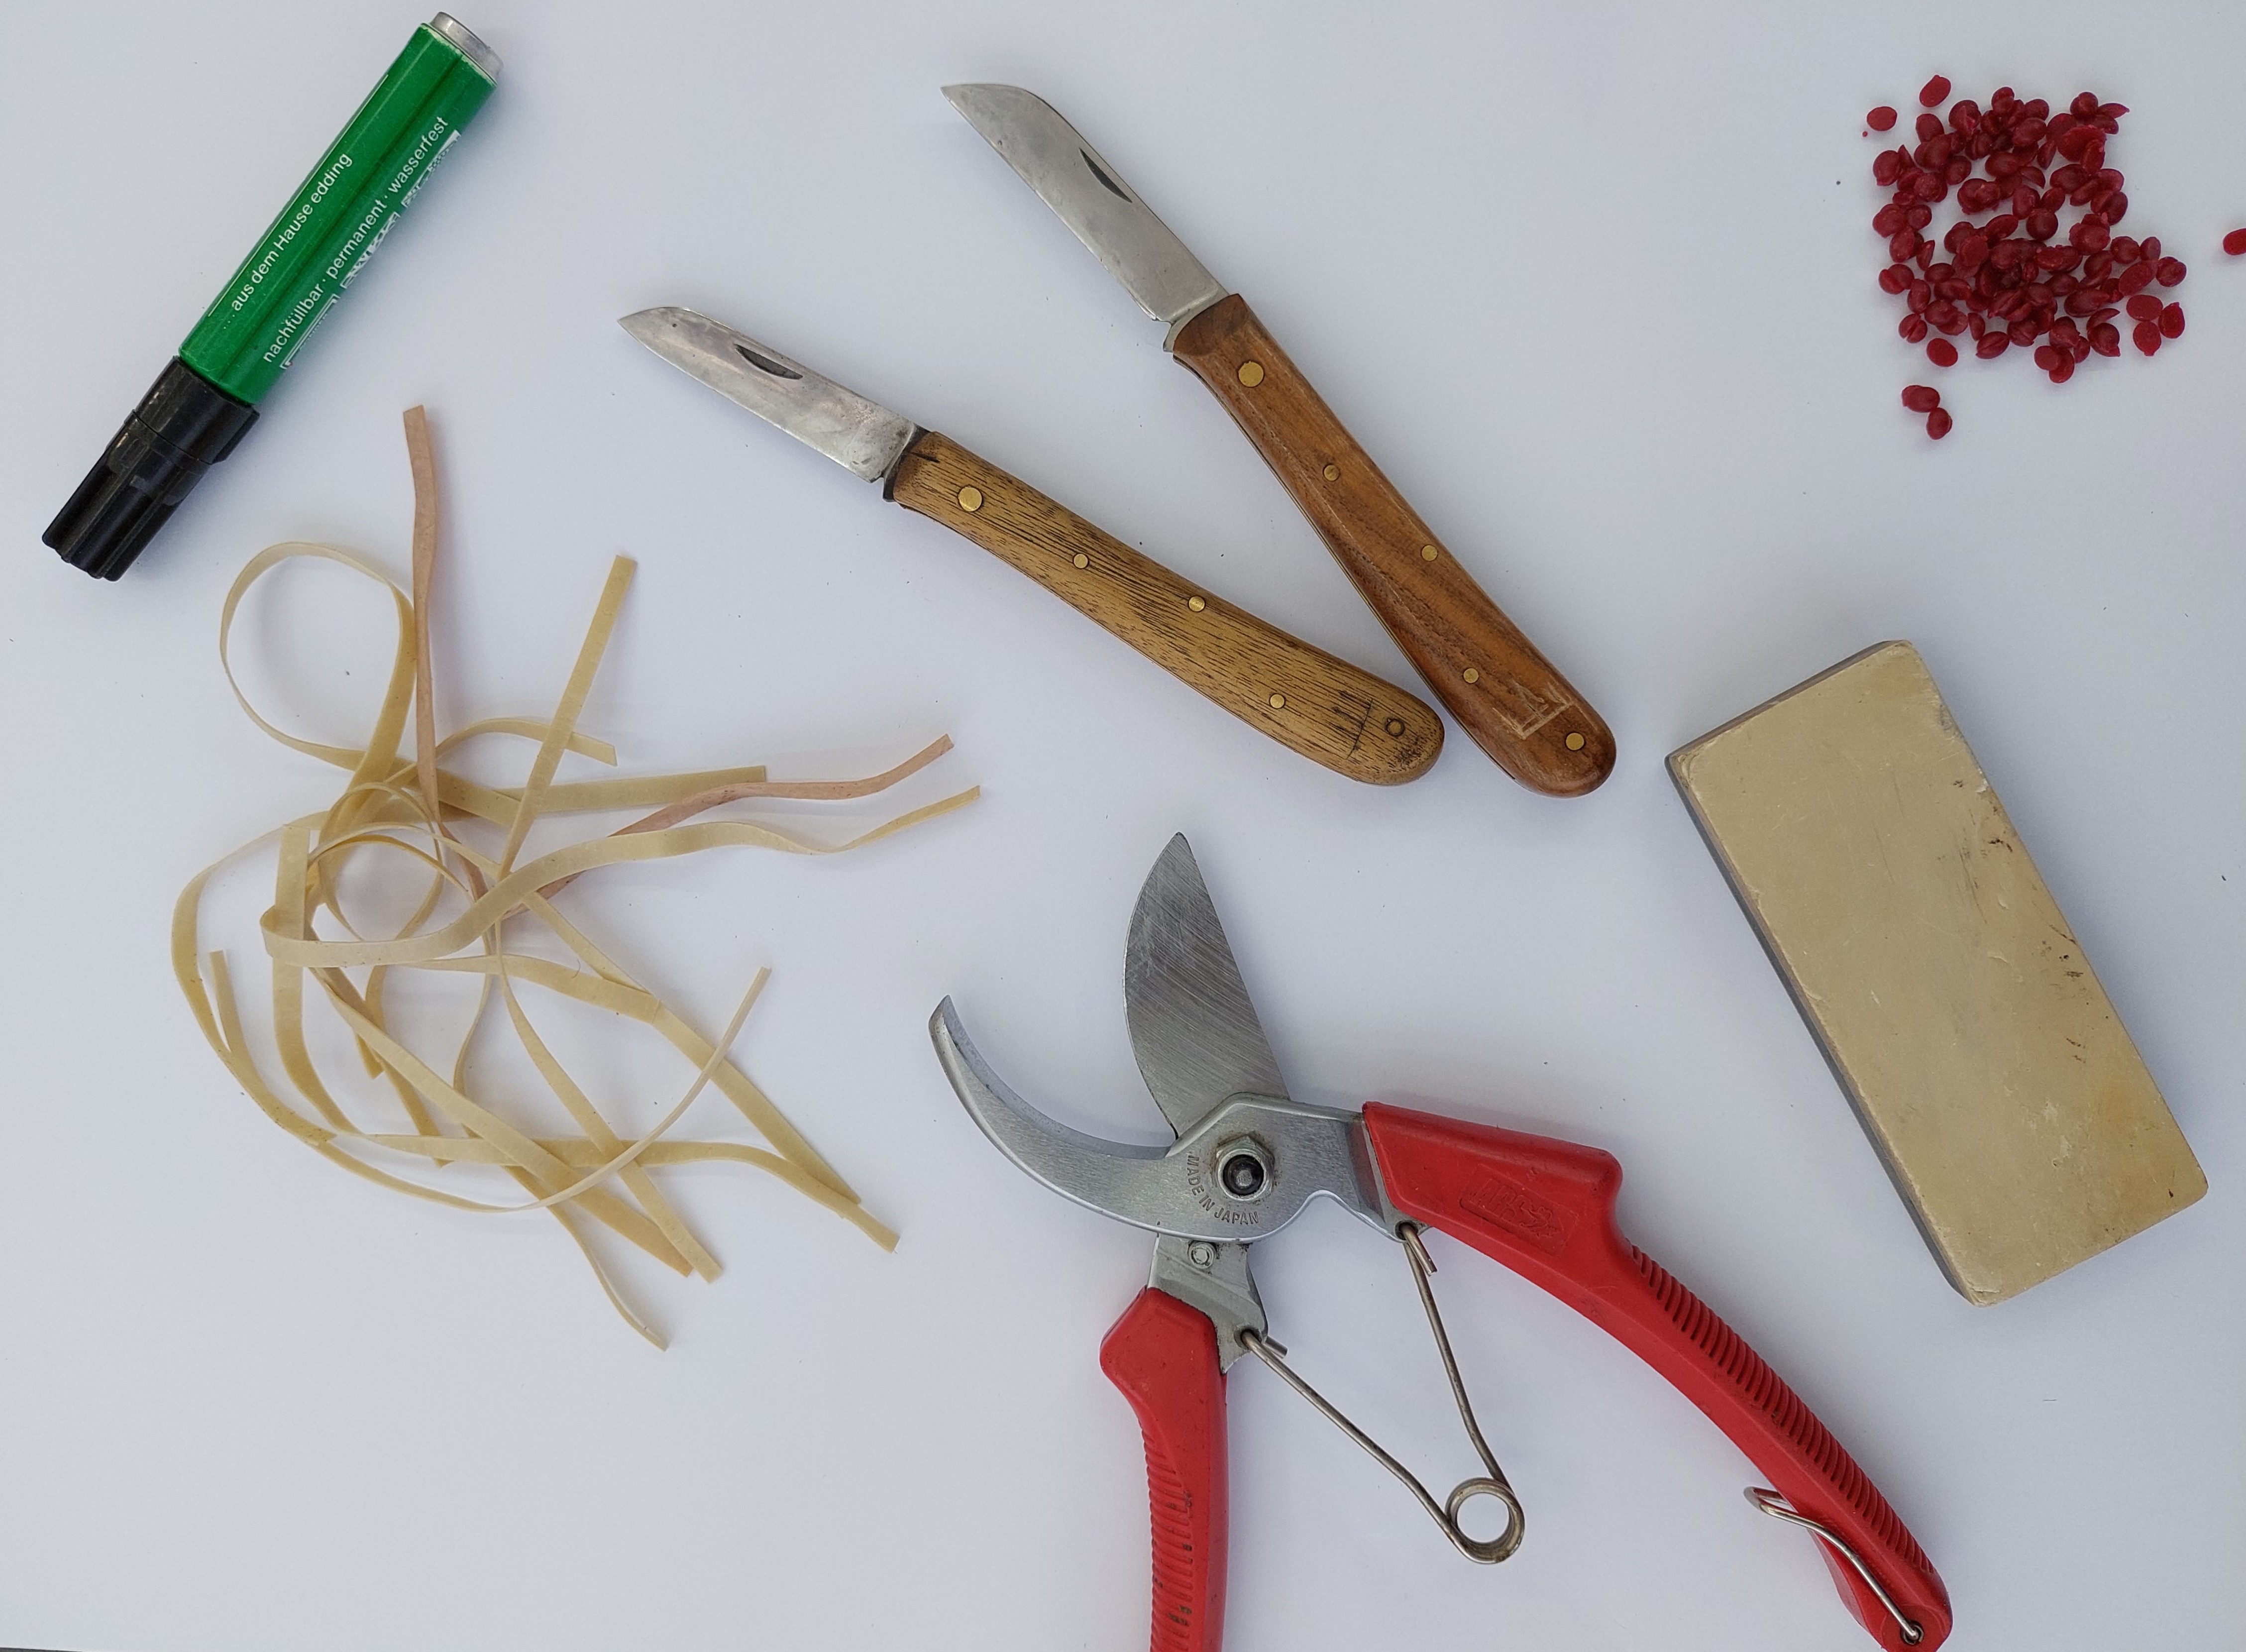 Zdjęcie przedstawia narzędzia użyte do szczepienia roślin: sekator, nóż, wosk, gumki, flamaster.